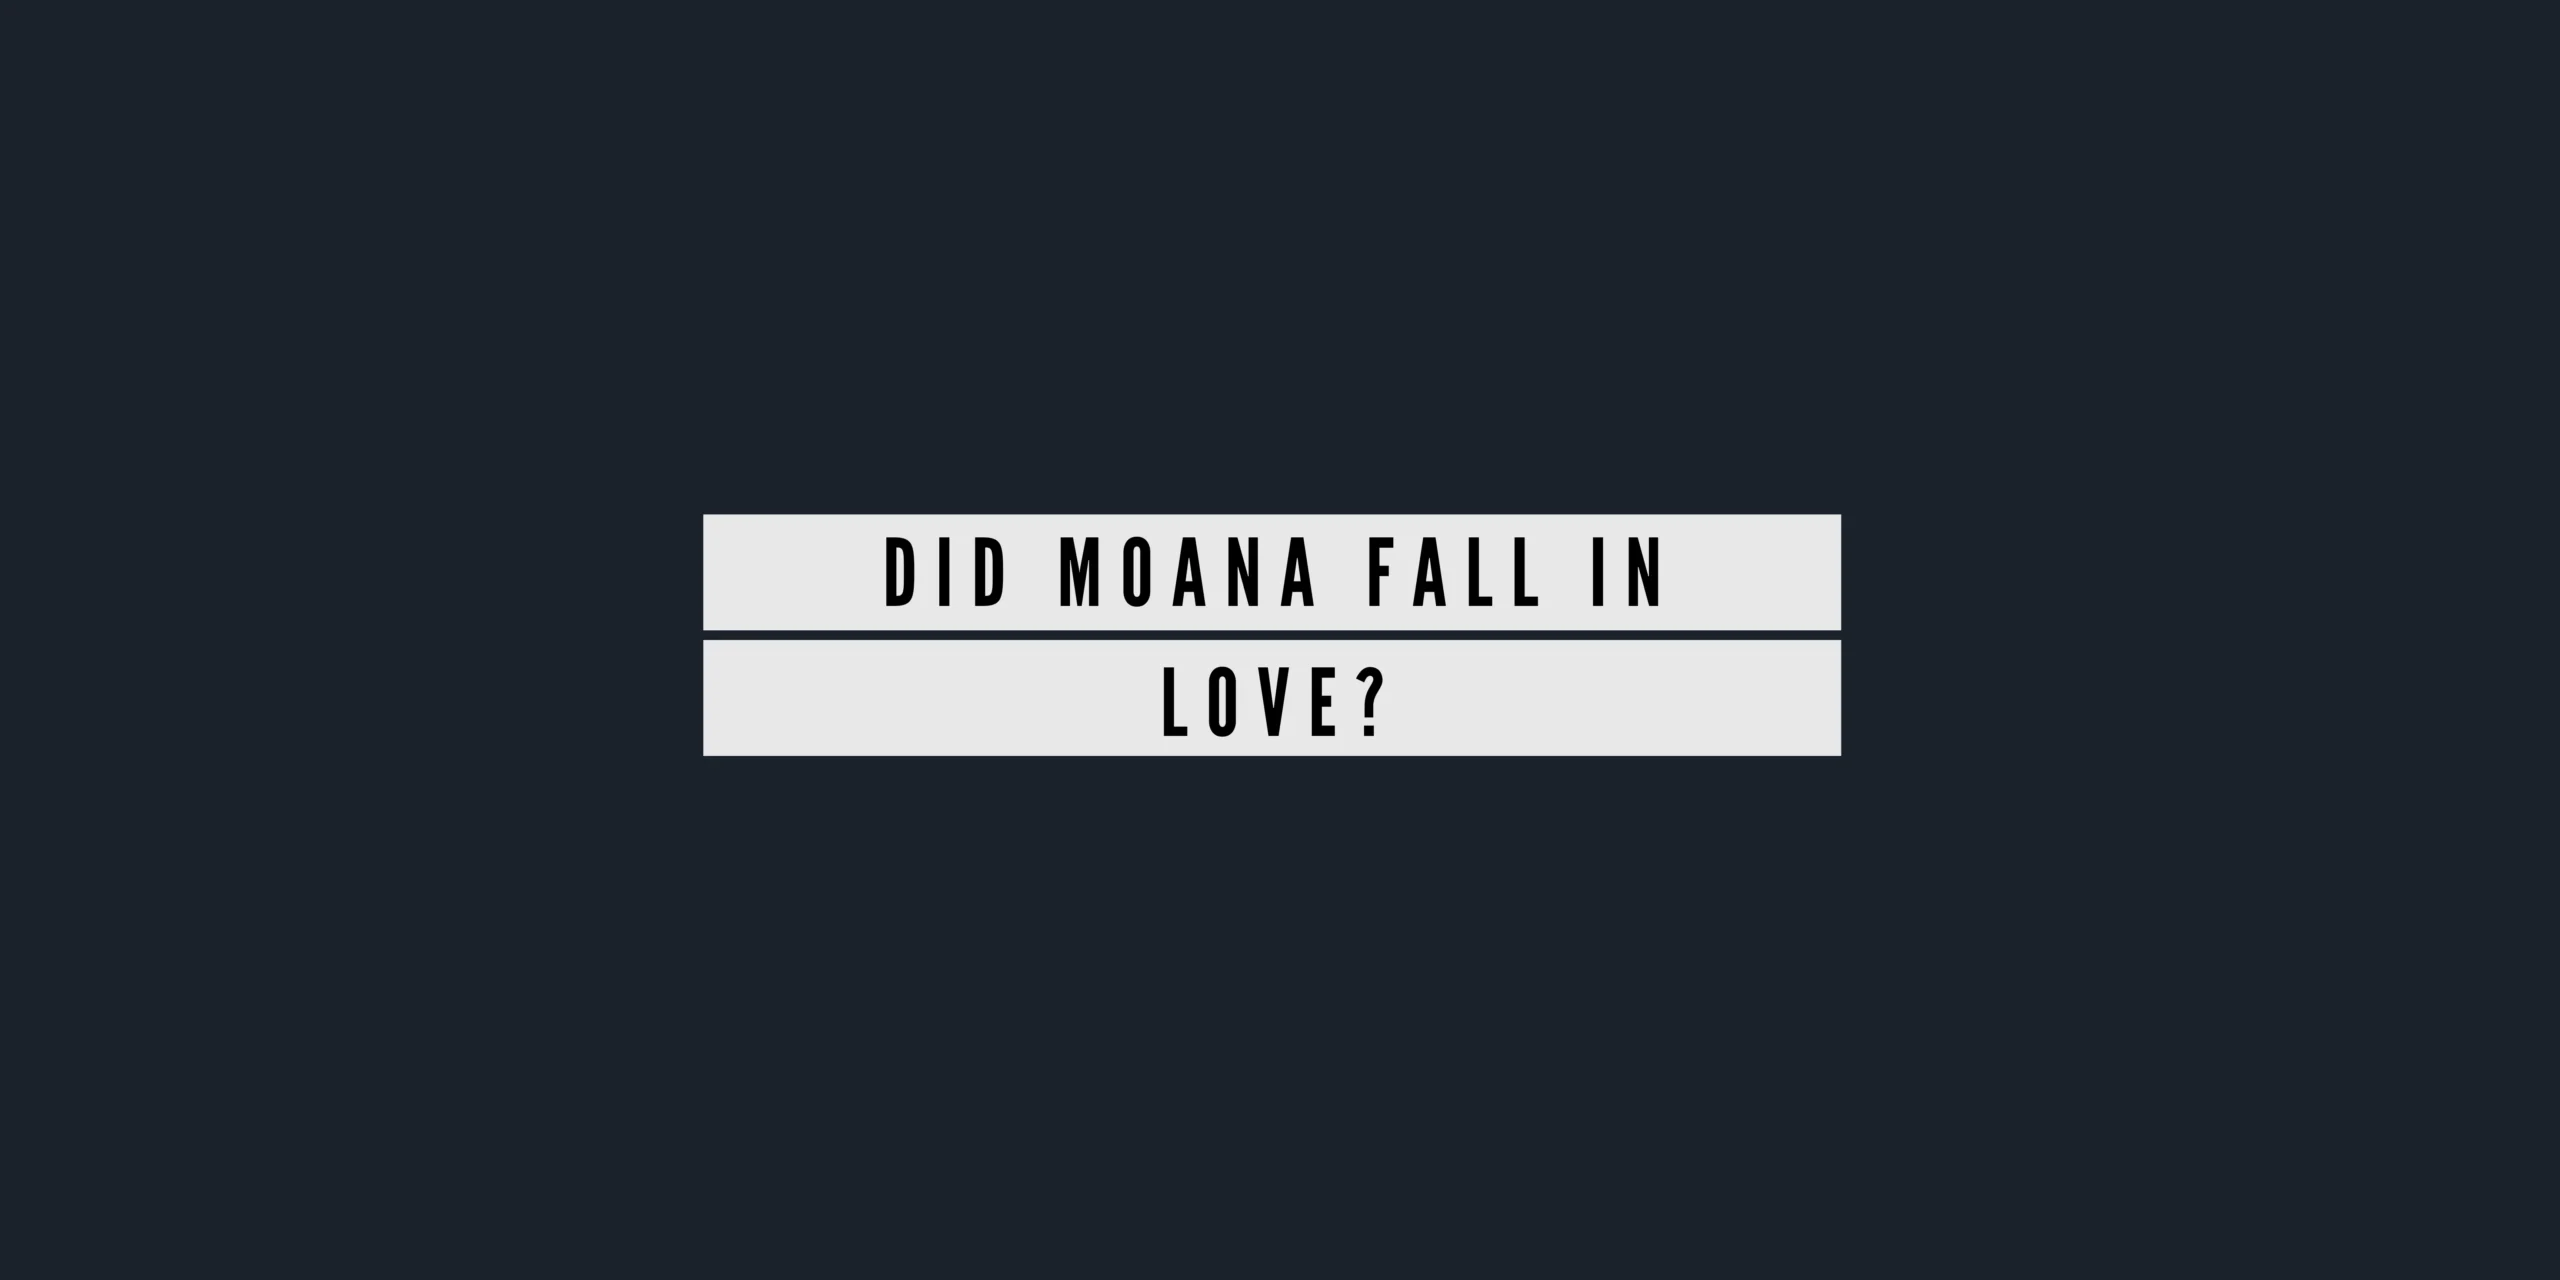 Did Moana Fall in Love